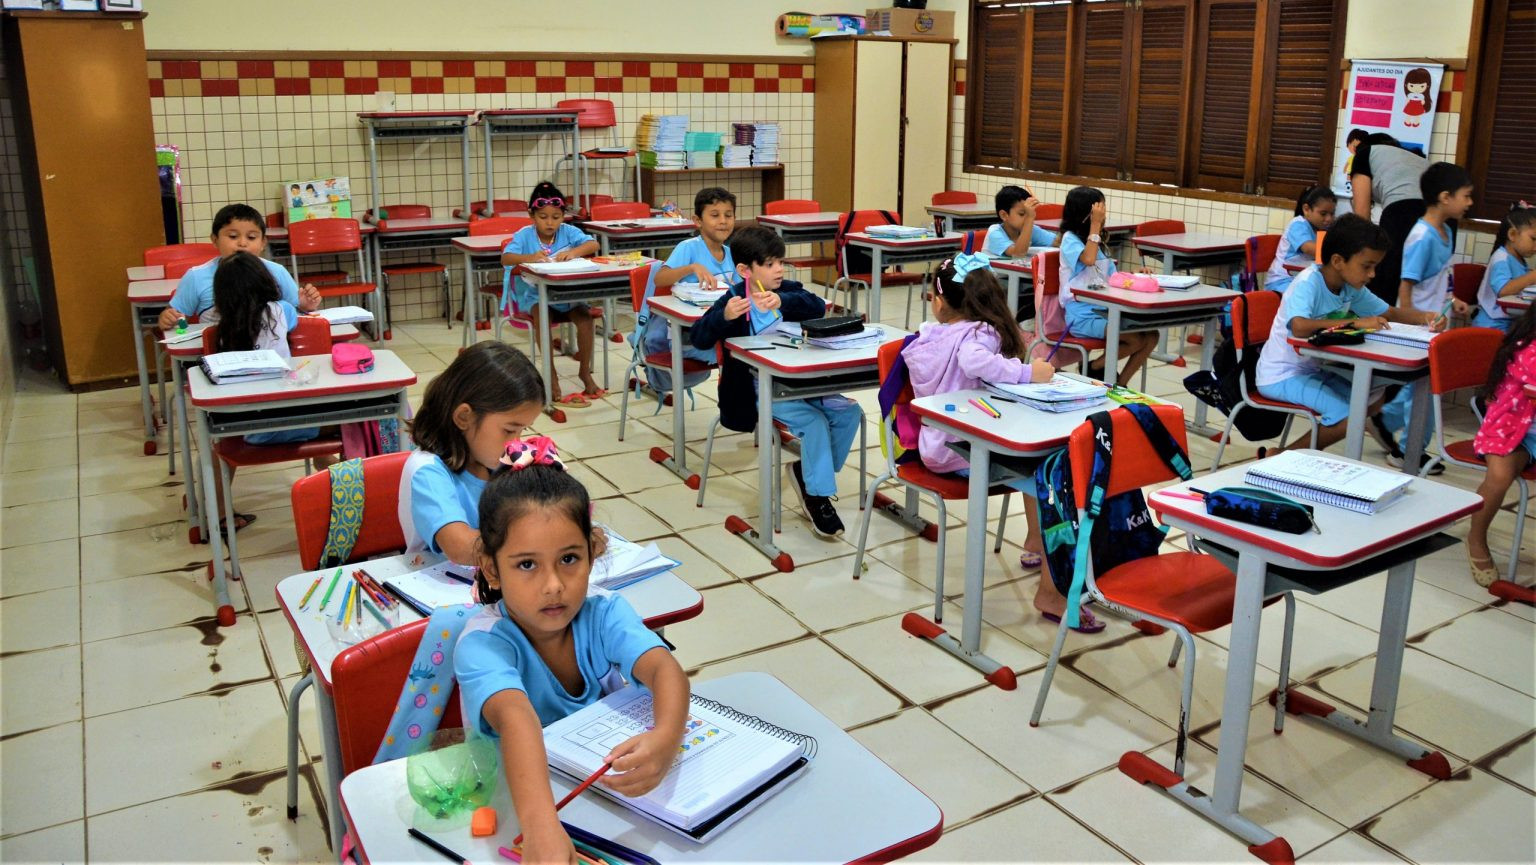 Prefeitura de Rio Branco alcança meta do Selo Unicef em rematrículas da Busca Ativa Escolar